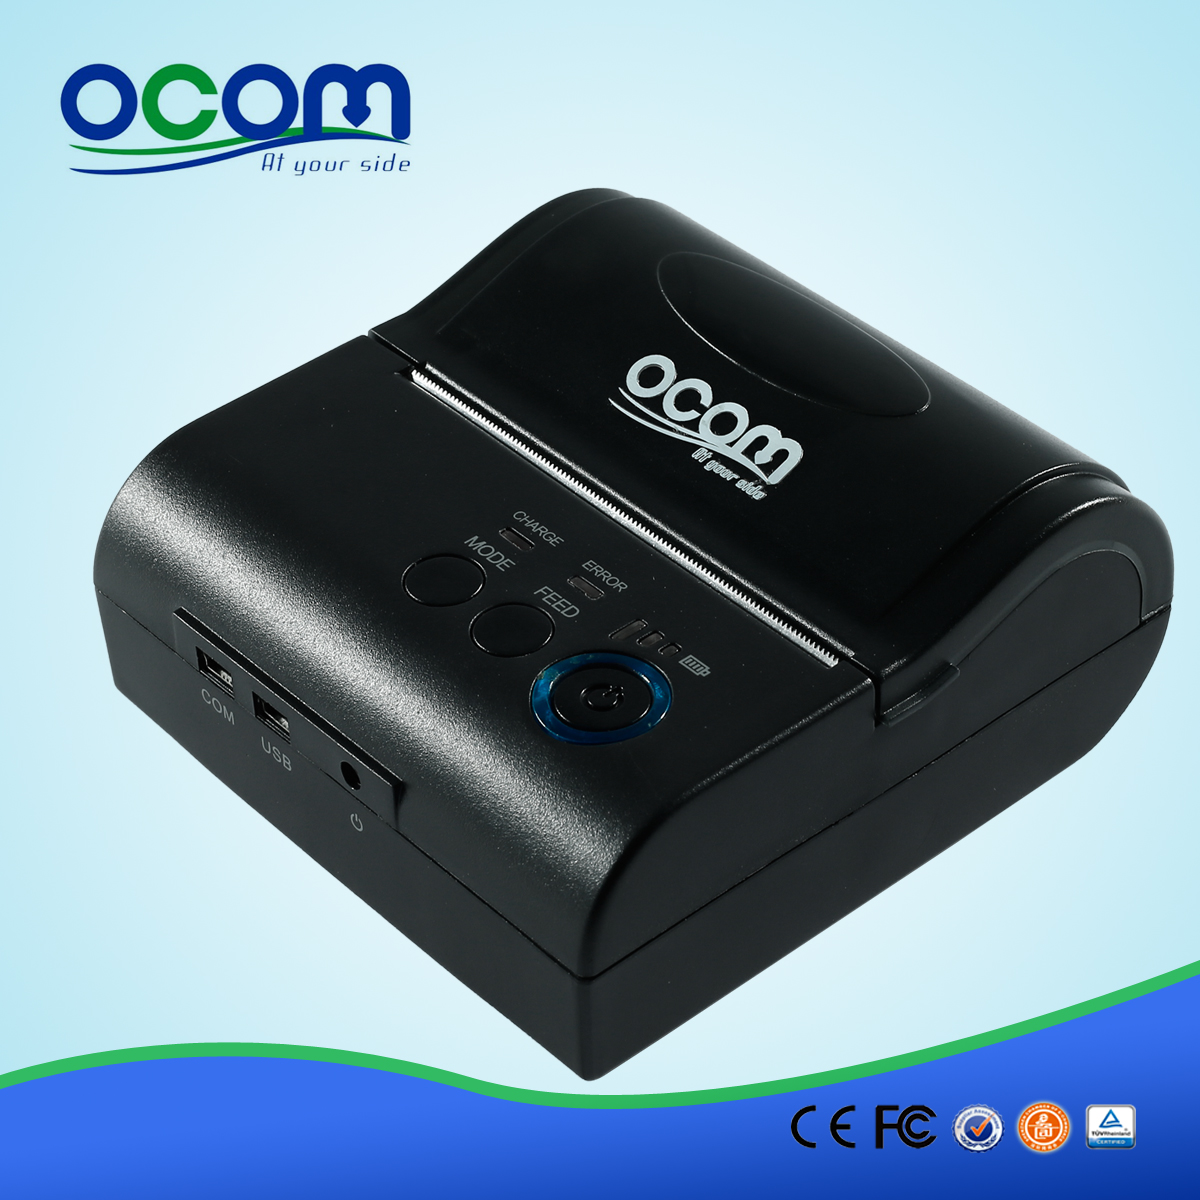 OCPP-M082: Taxi imprime un recibo con el aspecto elegante de 80 mm Impresora térmica Bluetooth